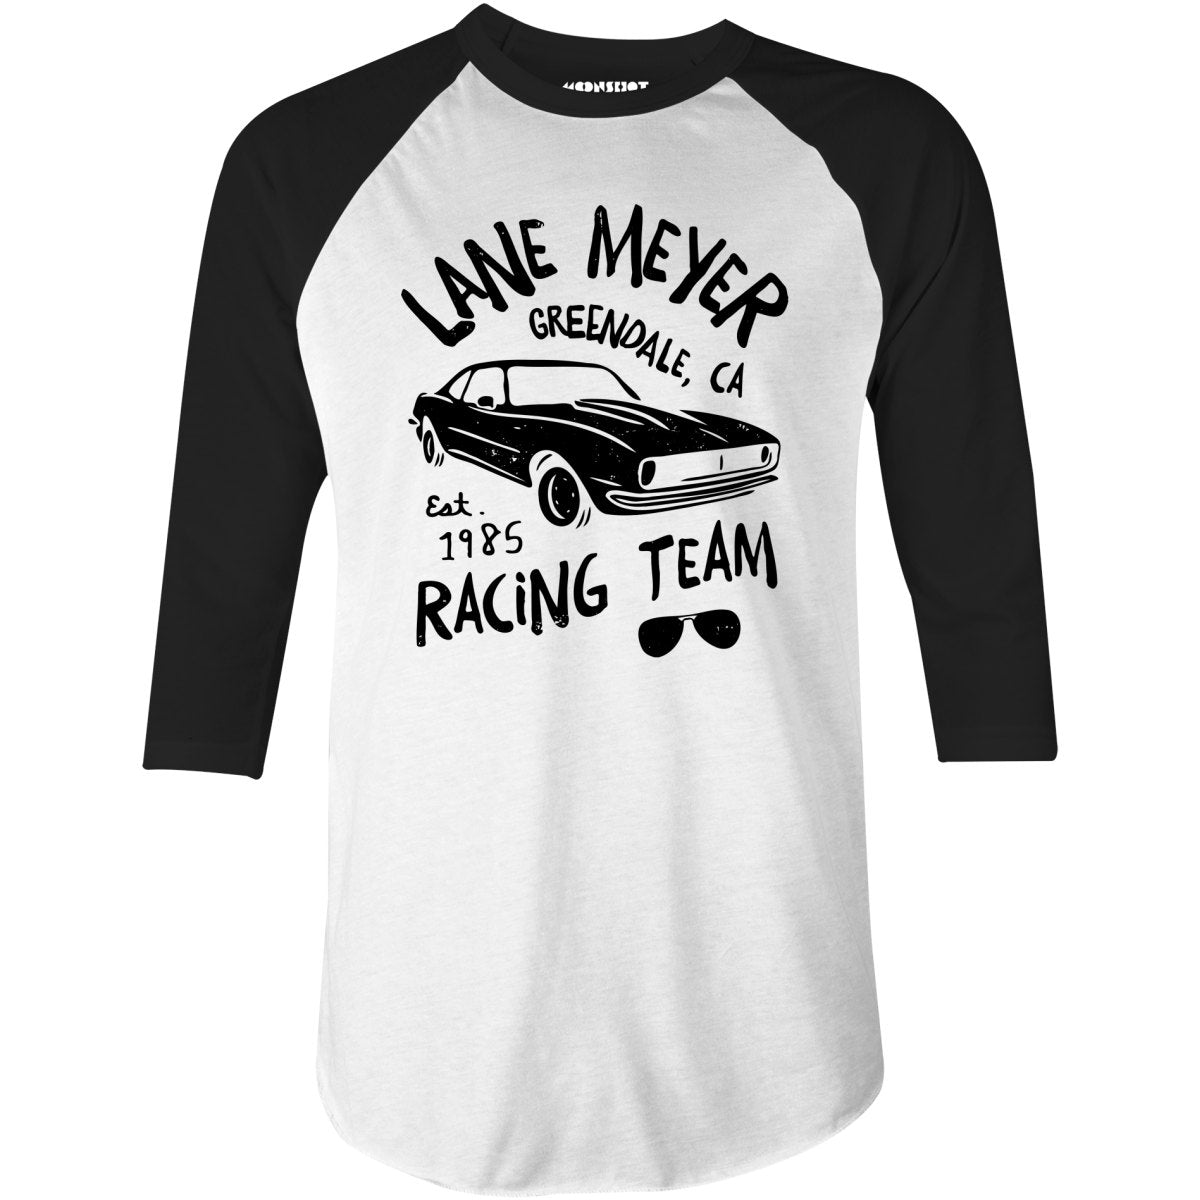 Lane Meyer Racing Team - 3/4 Sleeve Raglan T-Shirt